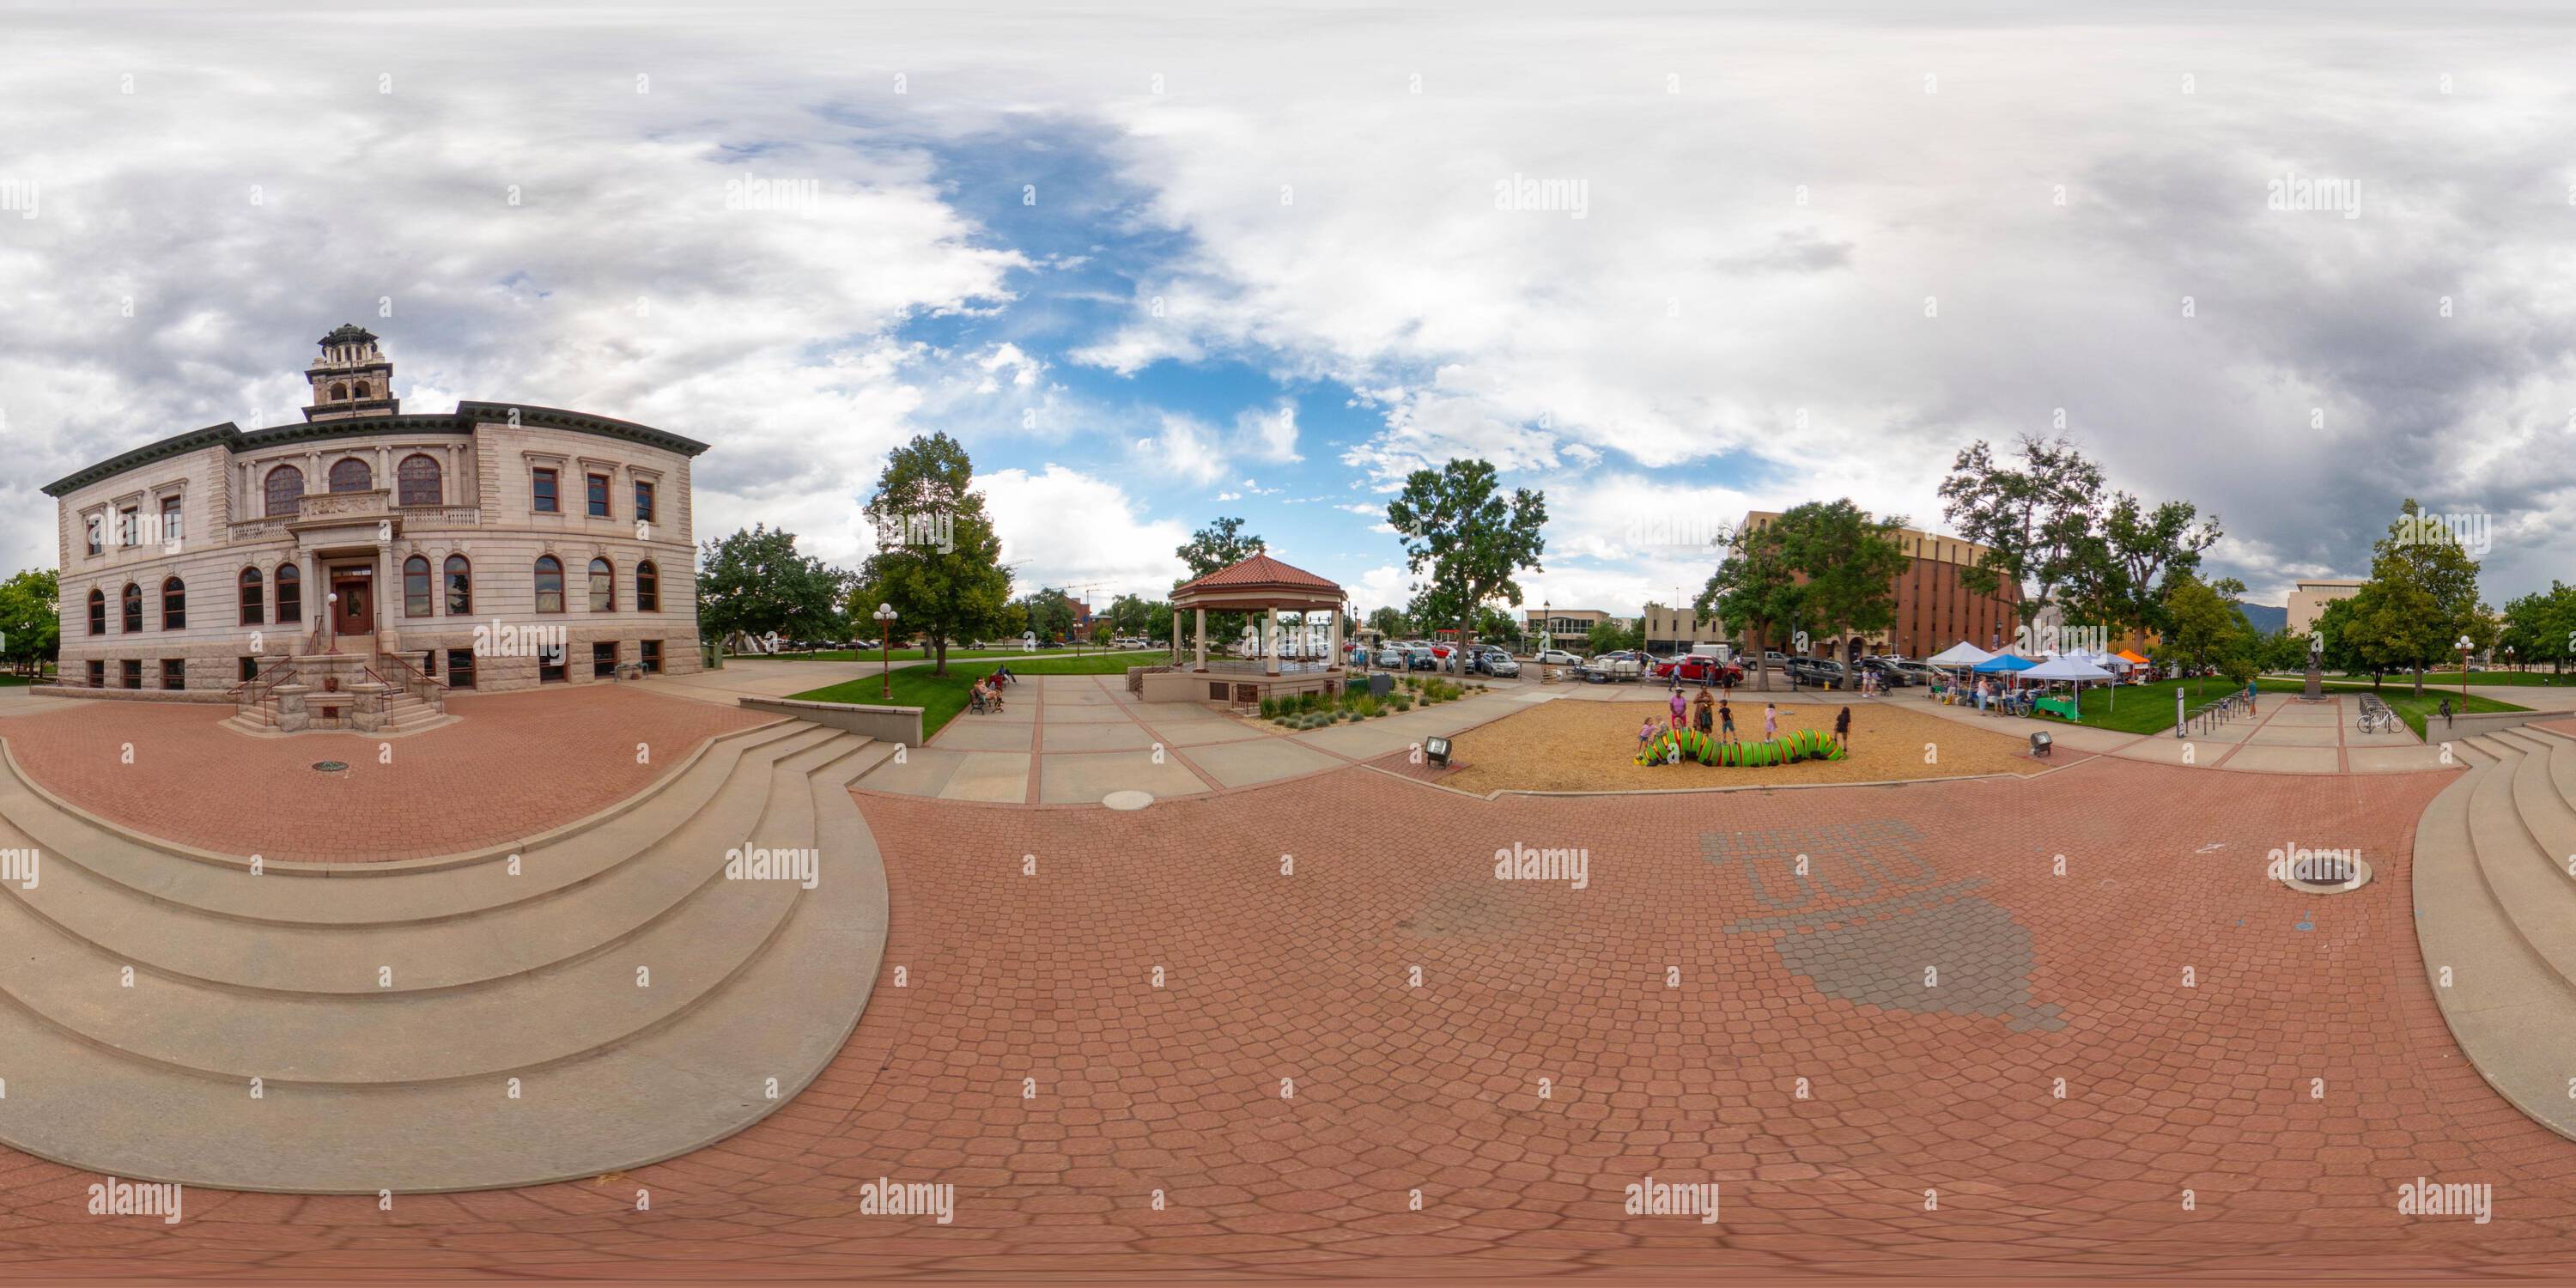 360 degree panoramic view of Colorado Springs, CO, USA - July 26, 2023: 360 photo of Colorado Springs Pioneers Museum